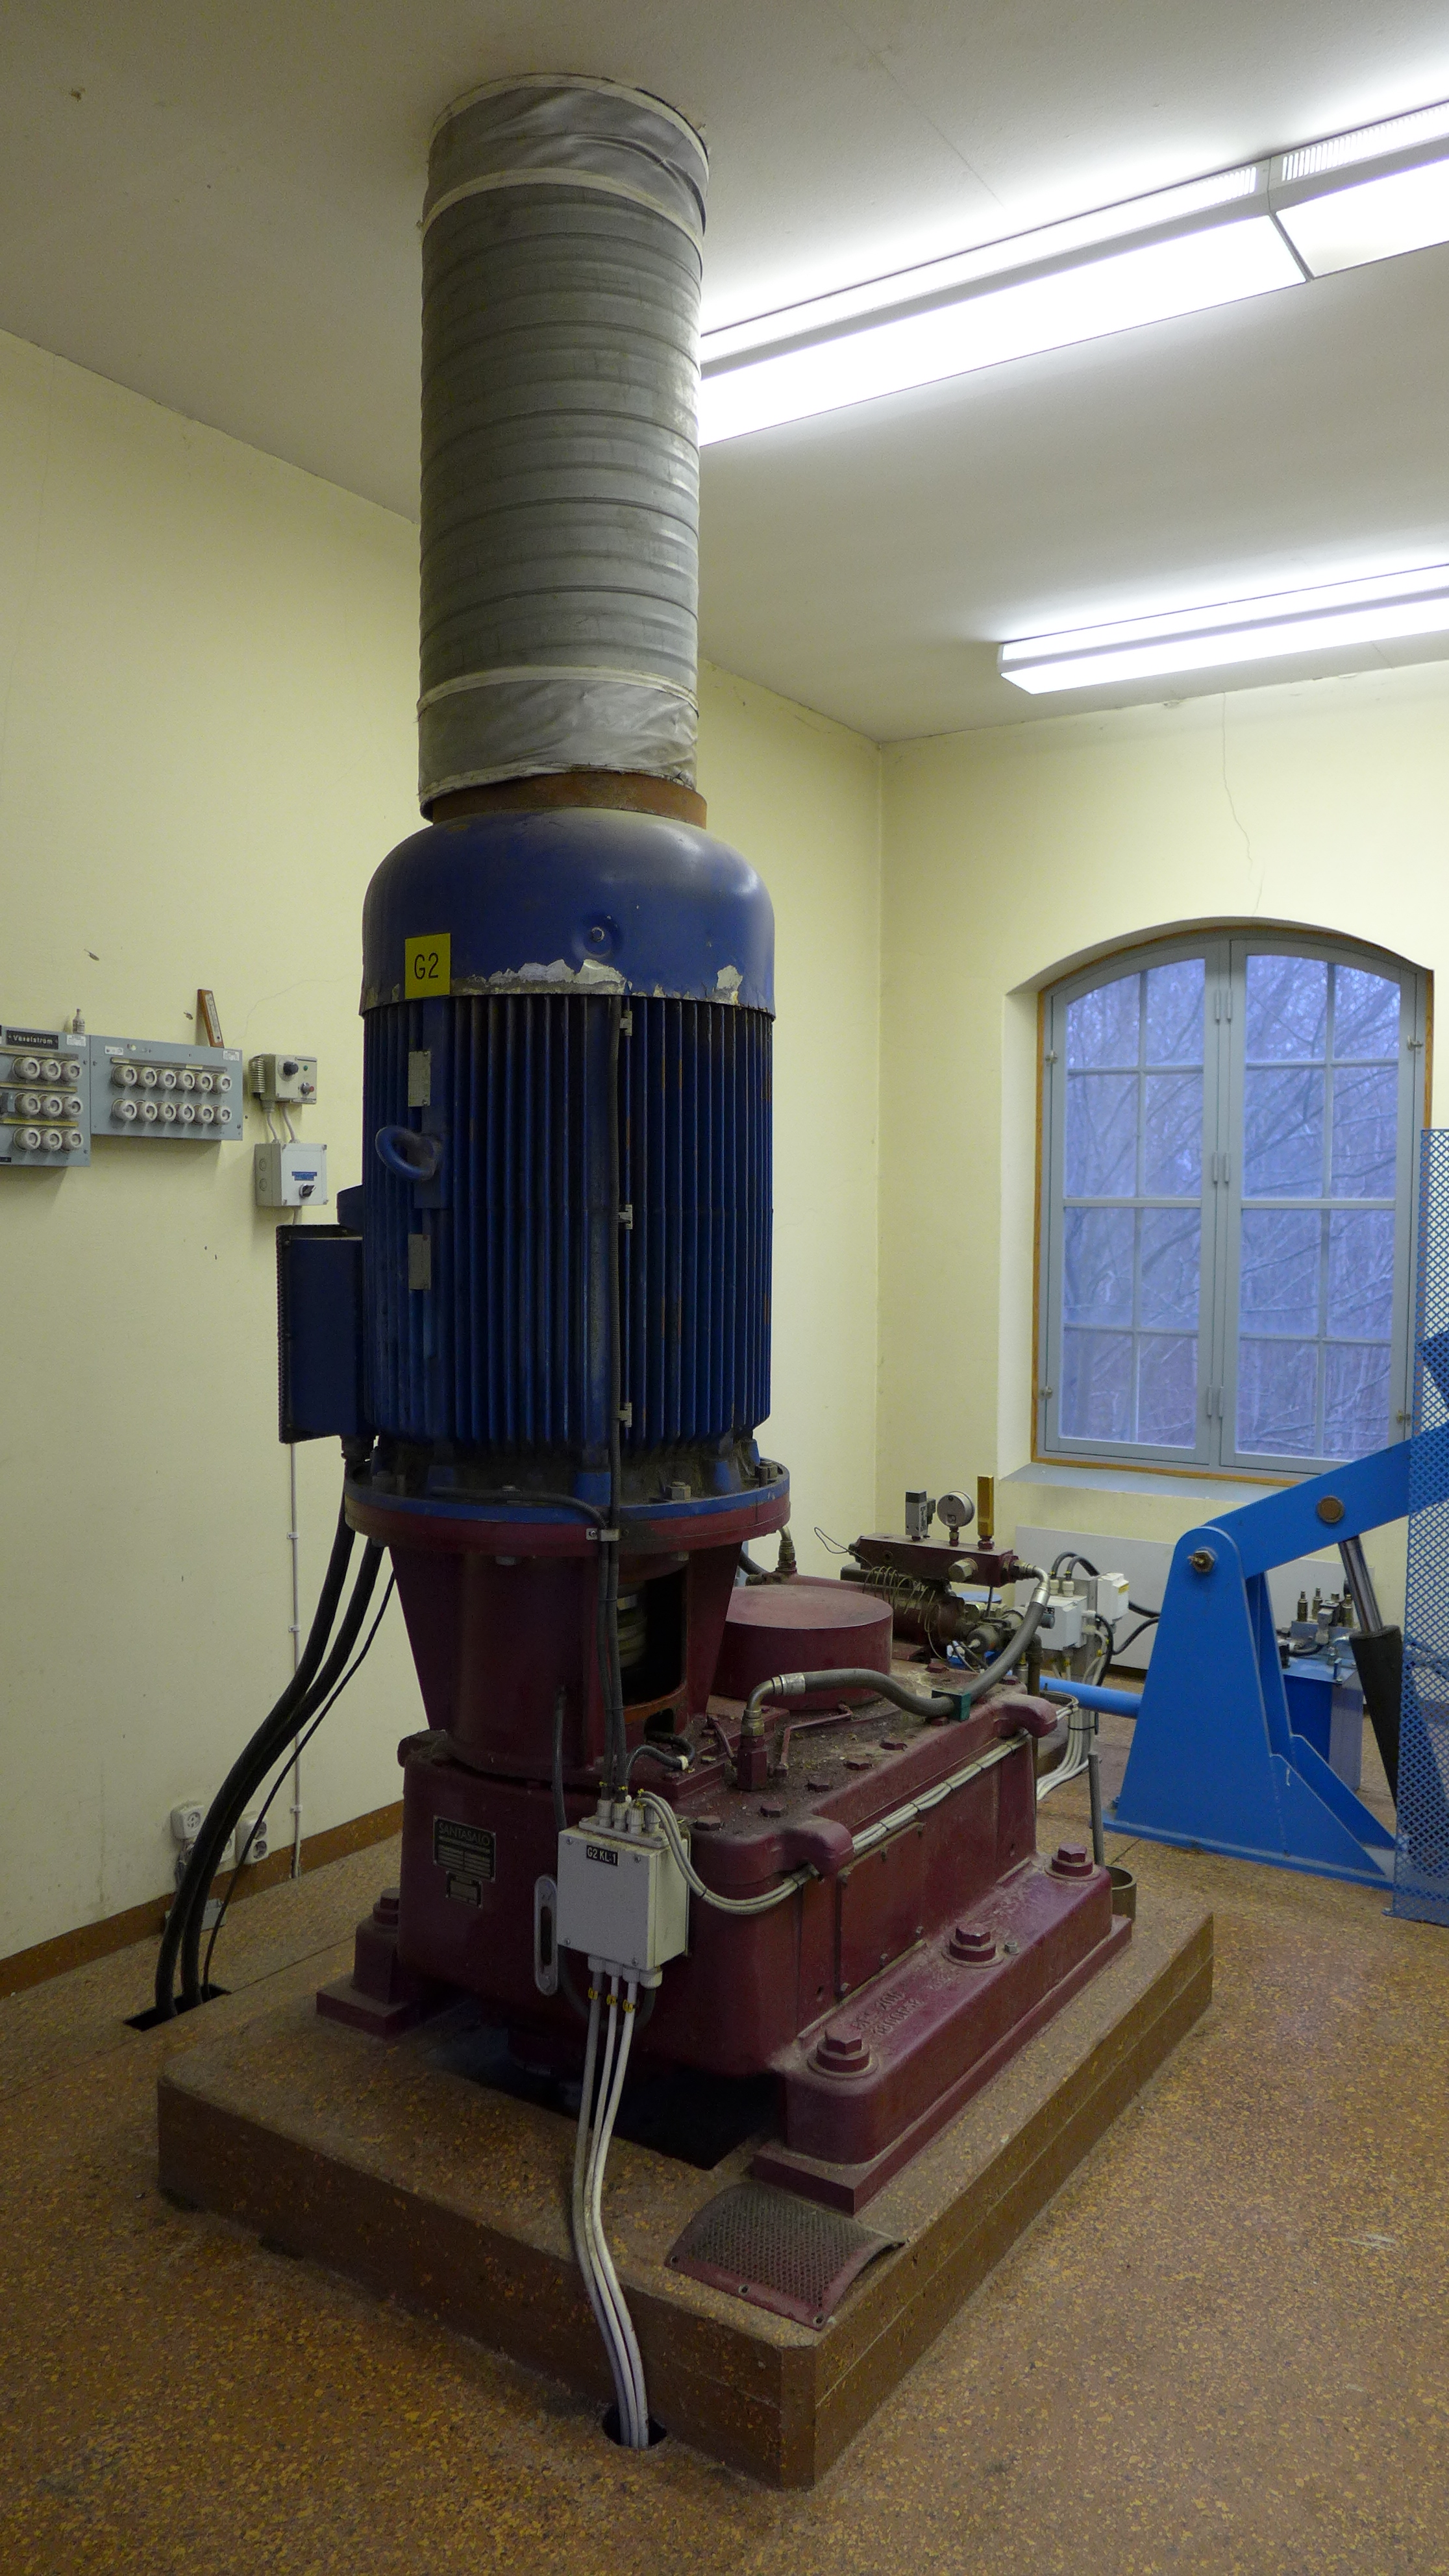 Maskineriets andra aggregat är en vertikal francisturbin Finshyttan, som har flyttats till Lunne från ett annat kraftverk. Generatorn är asynkron och tillverkad av Bevi i Blomstermåla. 